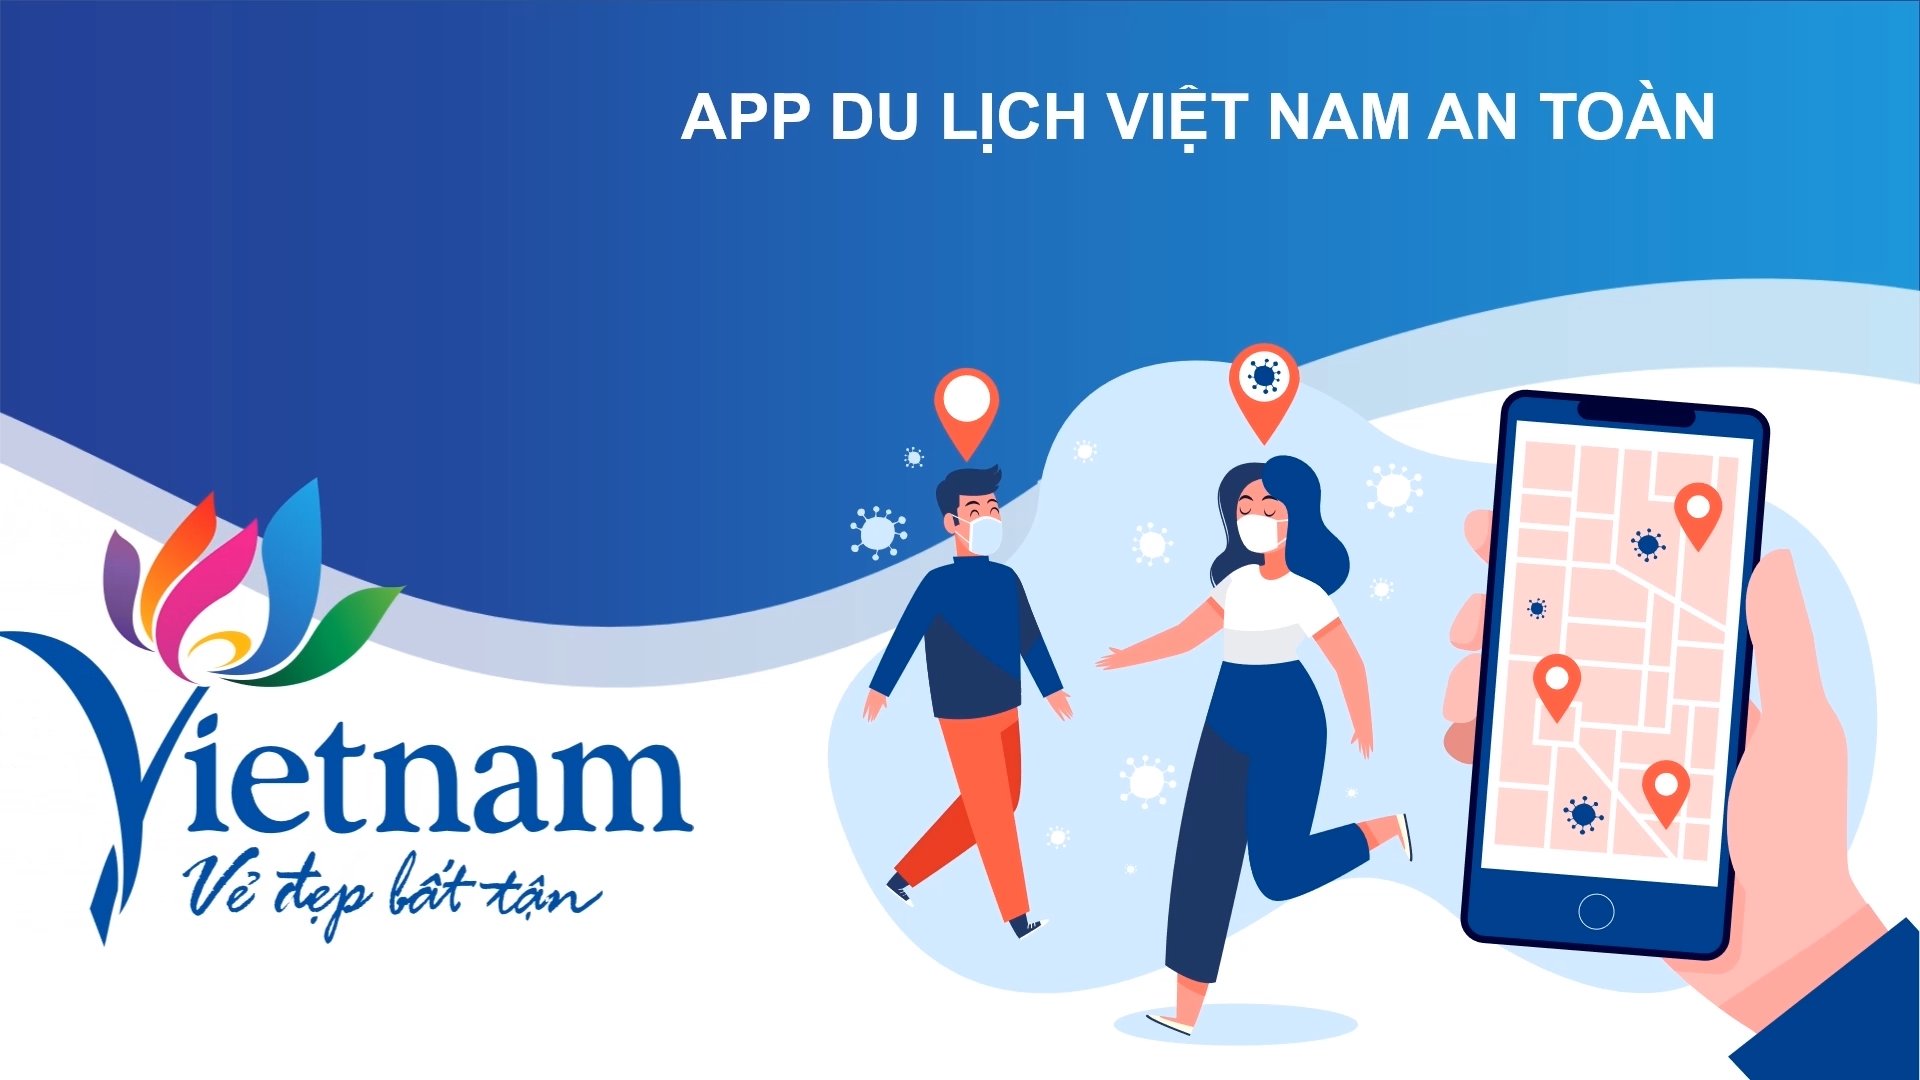 Giới thiệu ứng dụng Du lịch Việt Nam an toàn